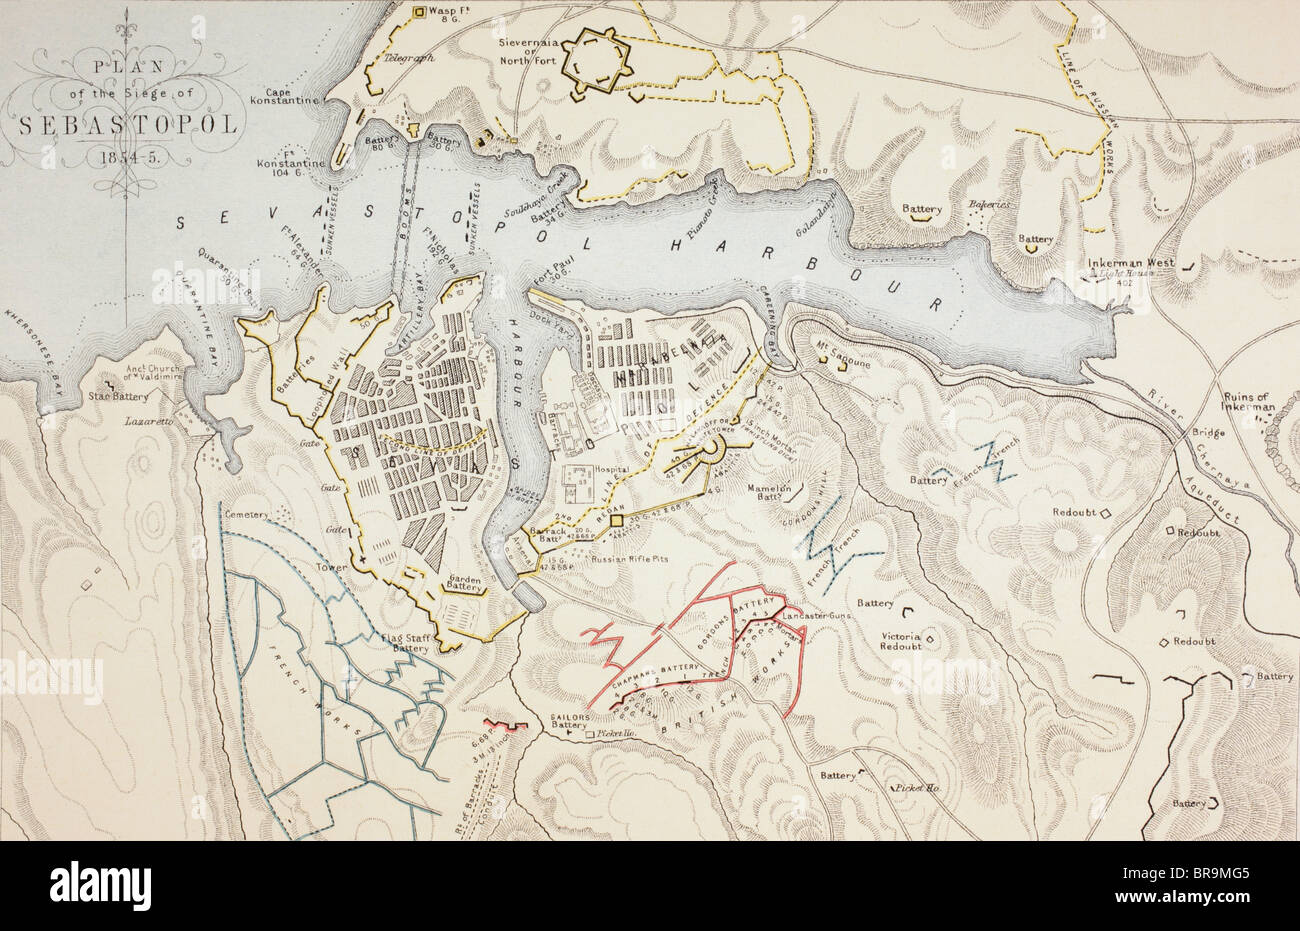 Piano d'assedio di Sebastopoli, 1854 a 1855. Foto Stock